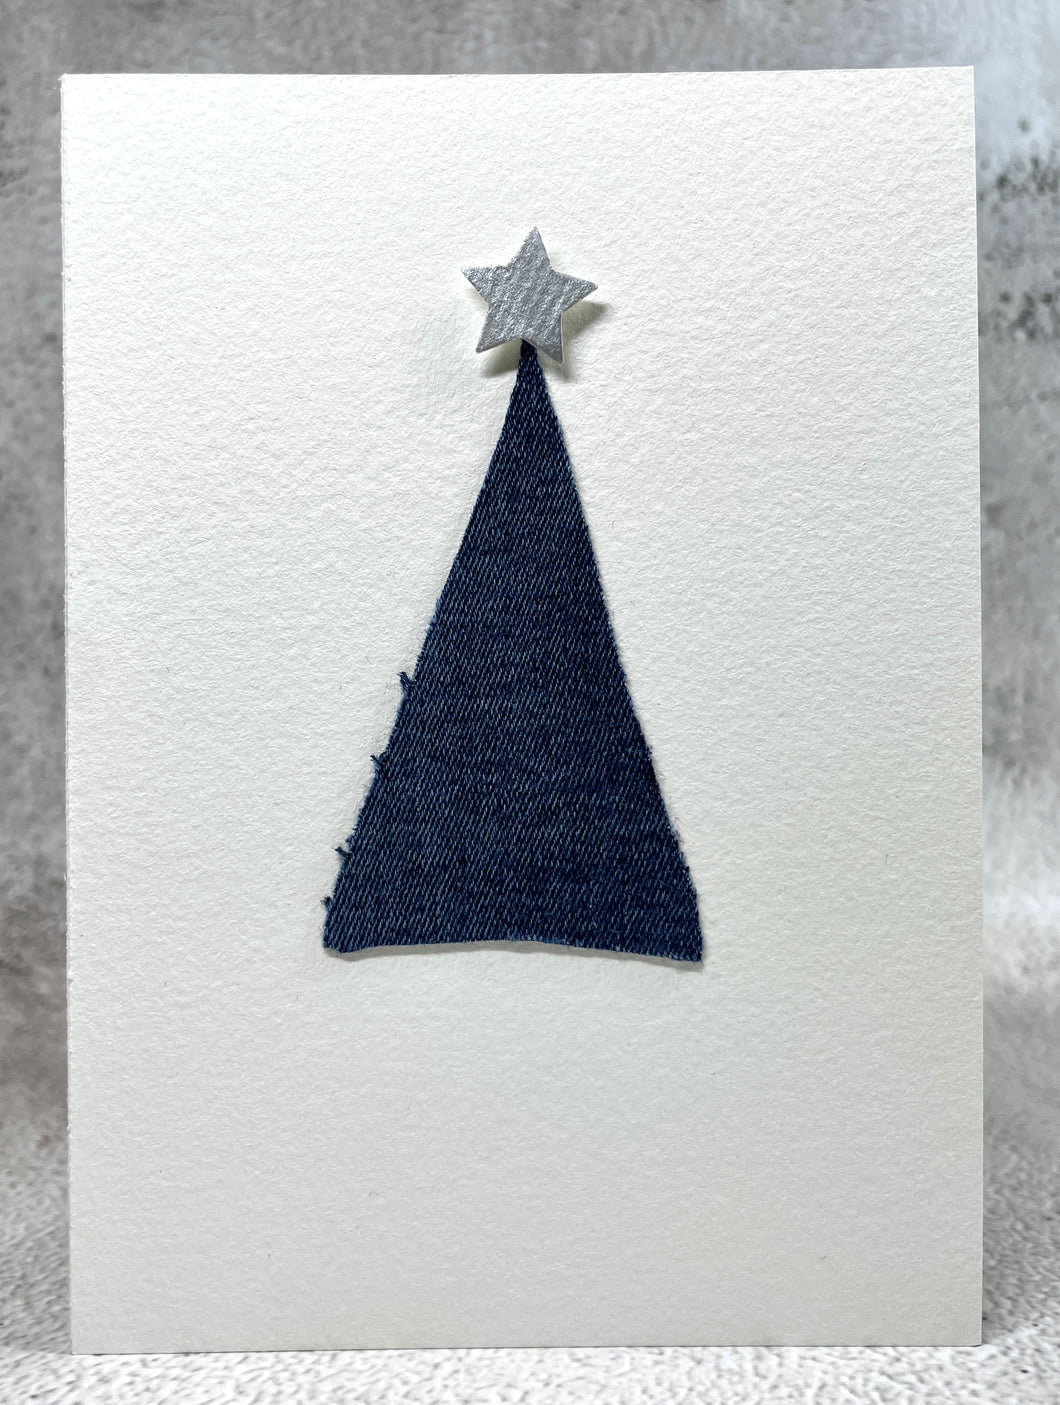 Abstract Denim and Silver Star Christmas Tree - Handmade Christmas Card